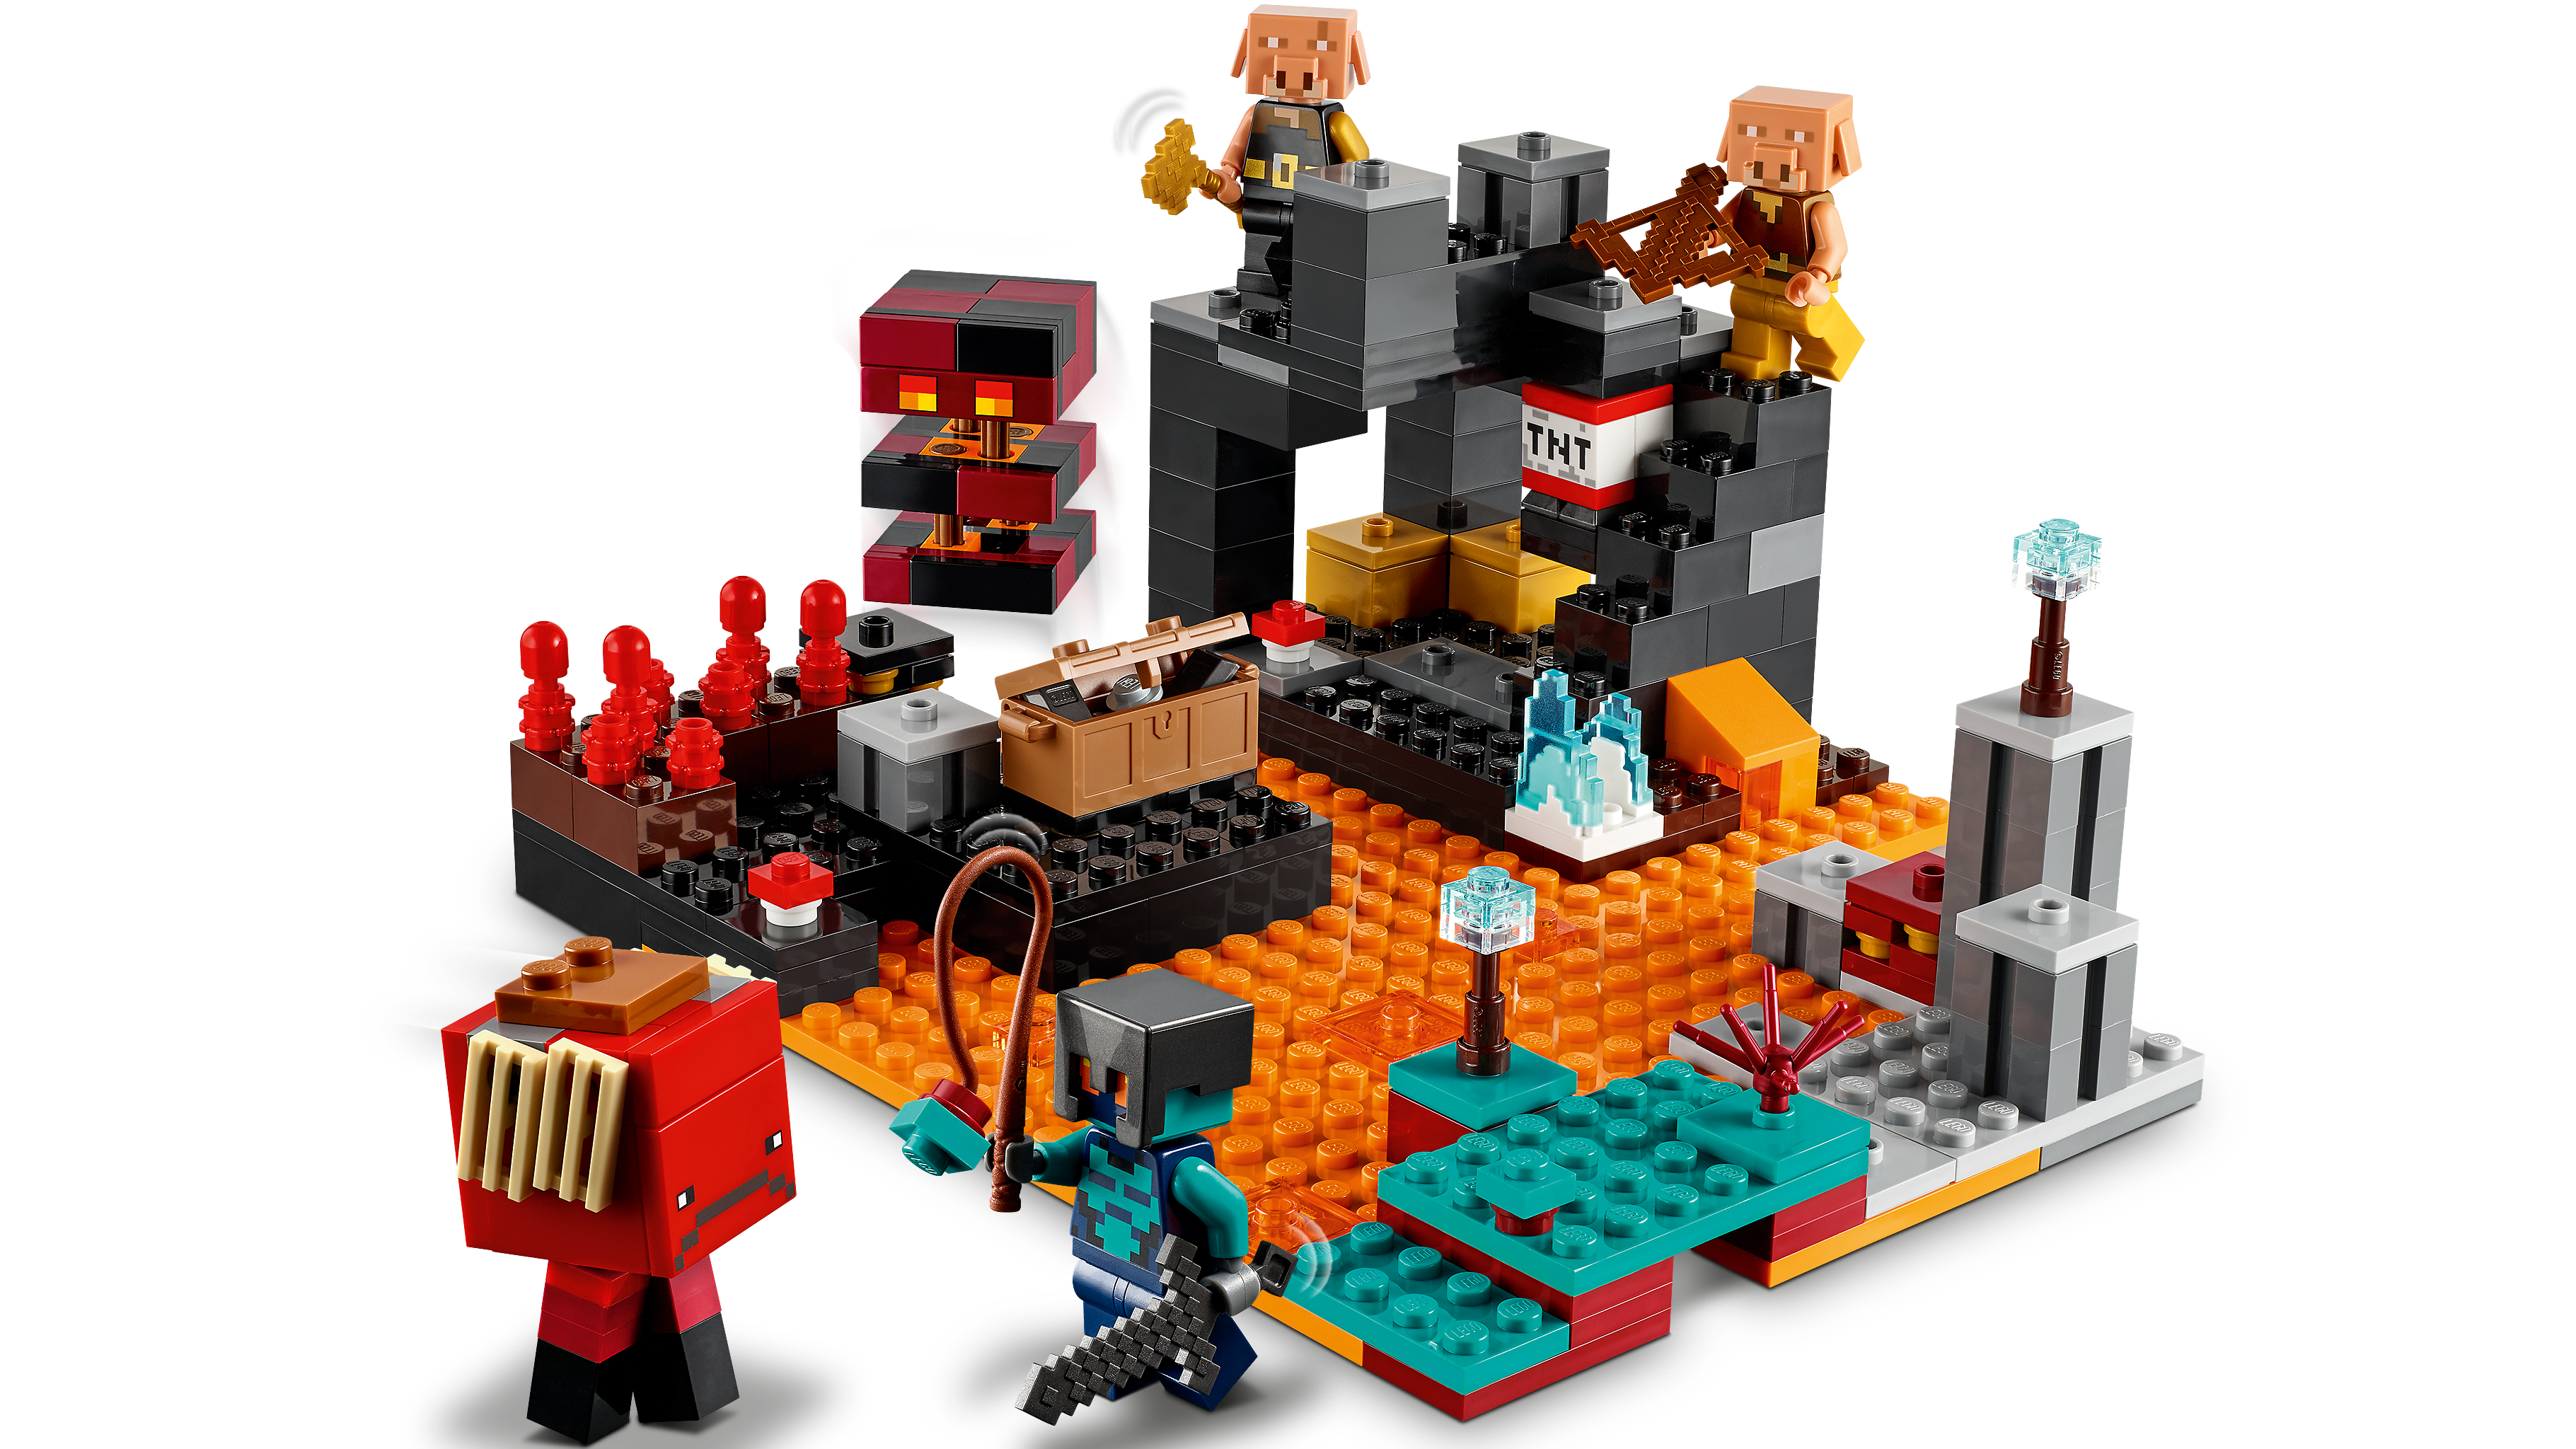 ネザーの砦 21185 - レゴ®マインクラフト セット - LEGO.comキッズ